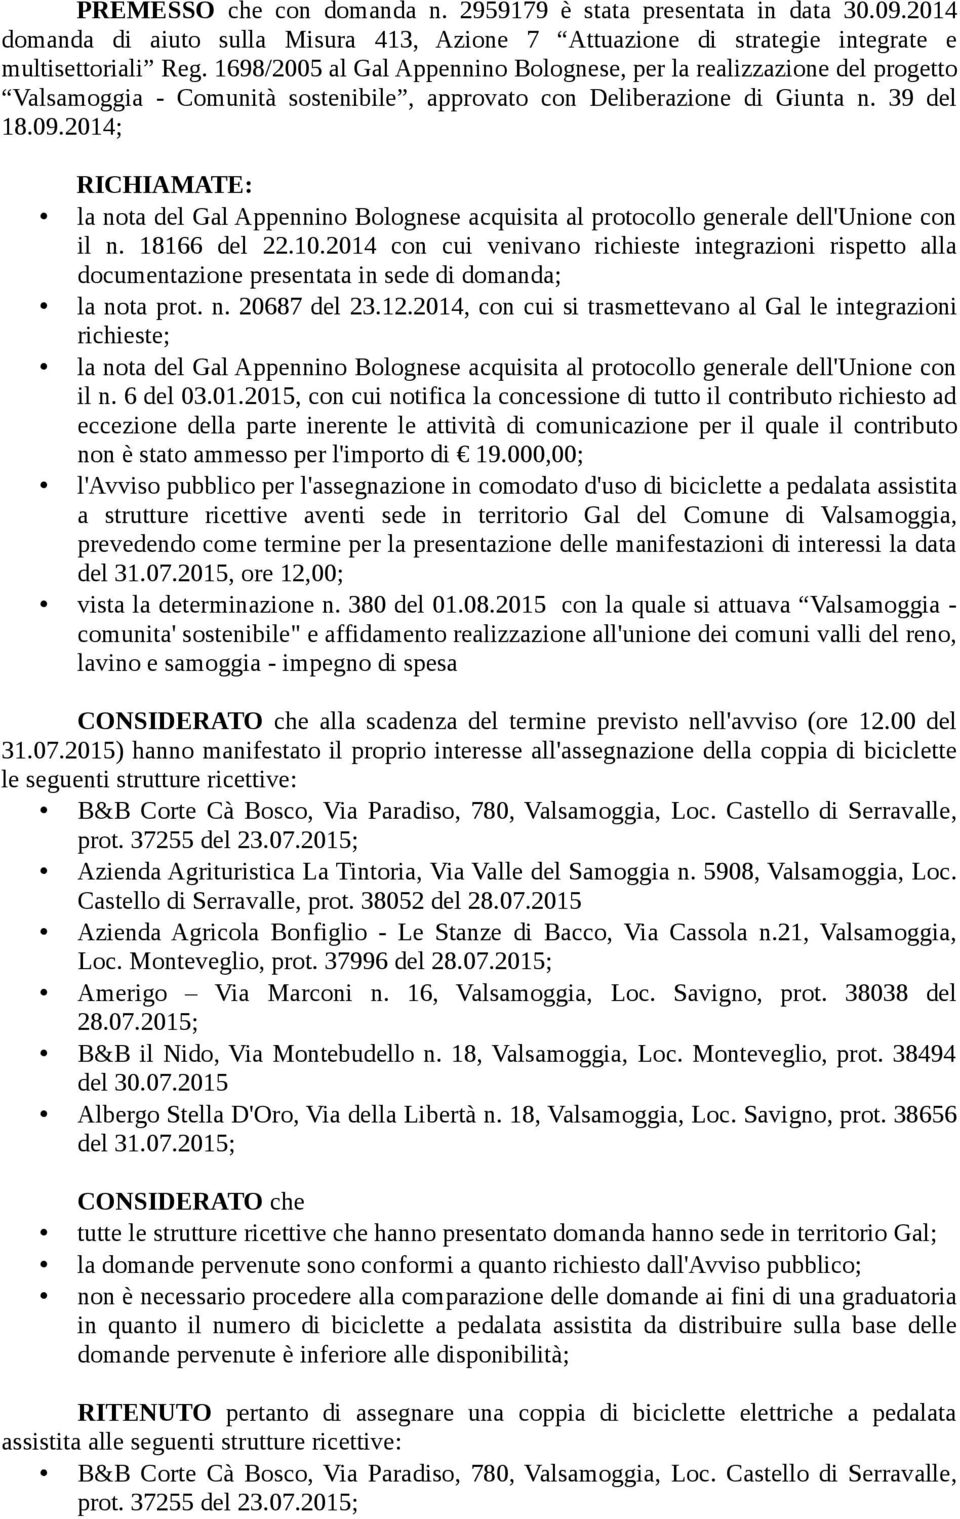 2014; RICHIAMATE: la nota del Gal Appennino Bolognese acquisita al protocollo generale dell'unione con il n. 18166 del 22.10.